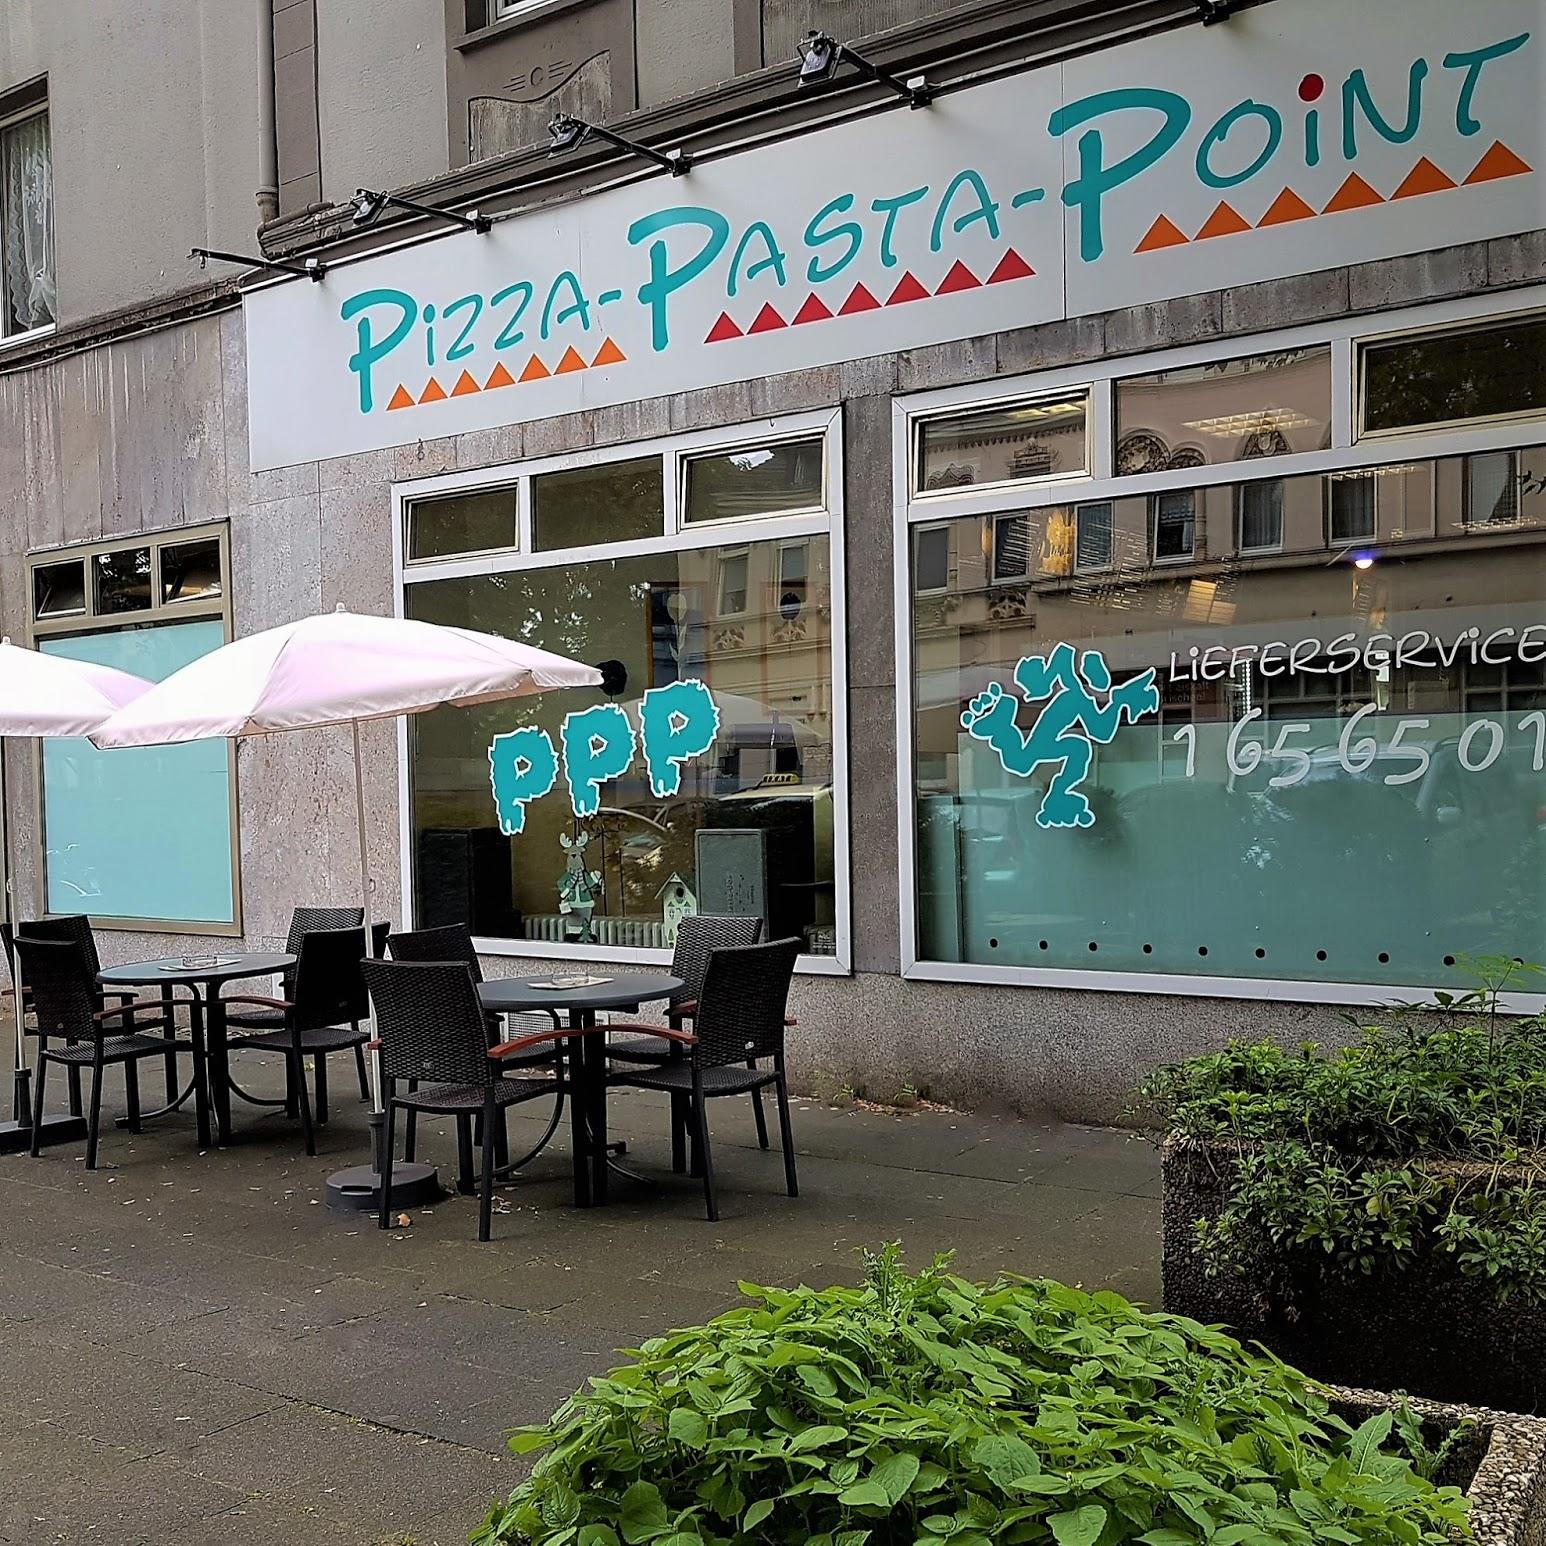 Restaurant "Pizza Pasta Point " in Gelsenkirchen